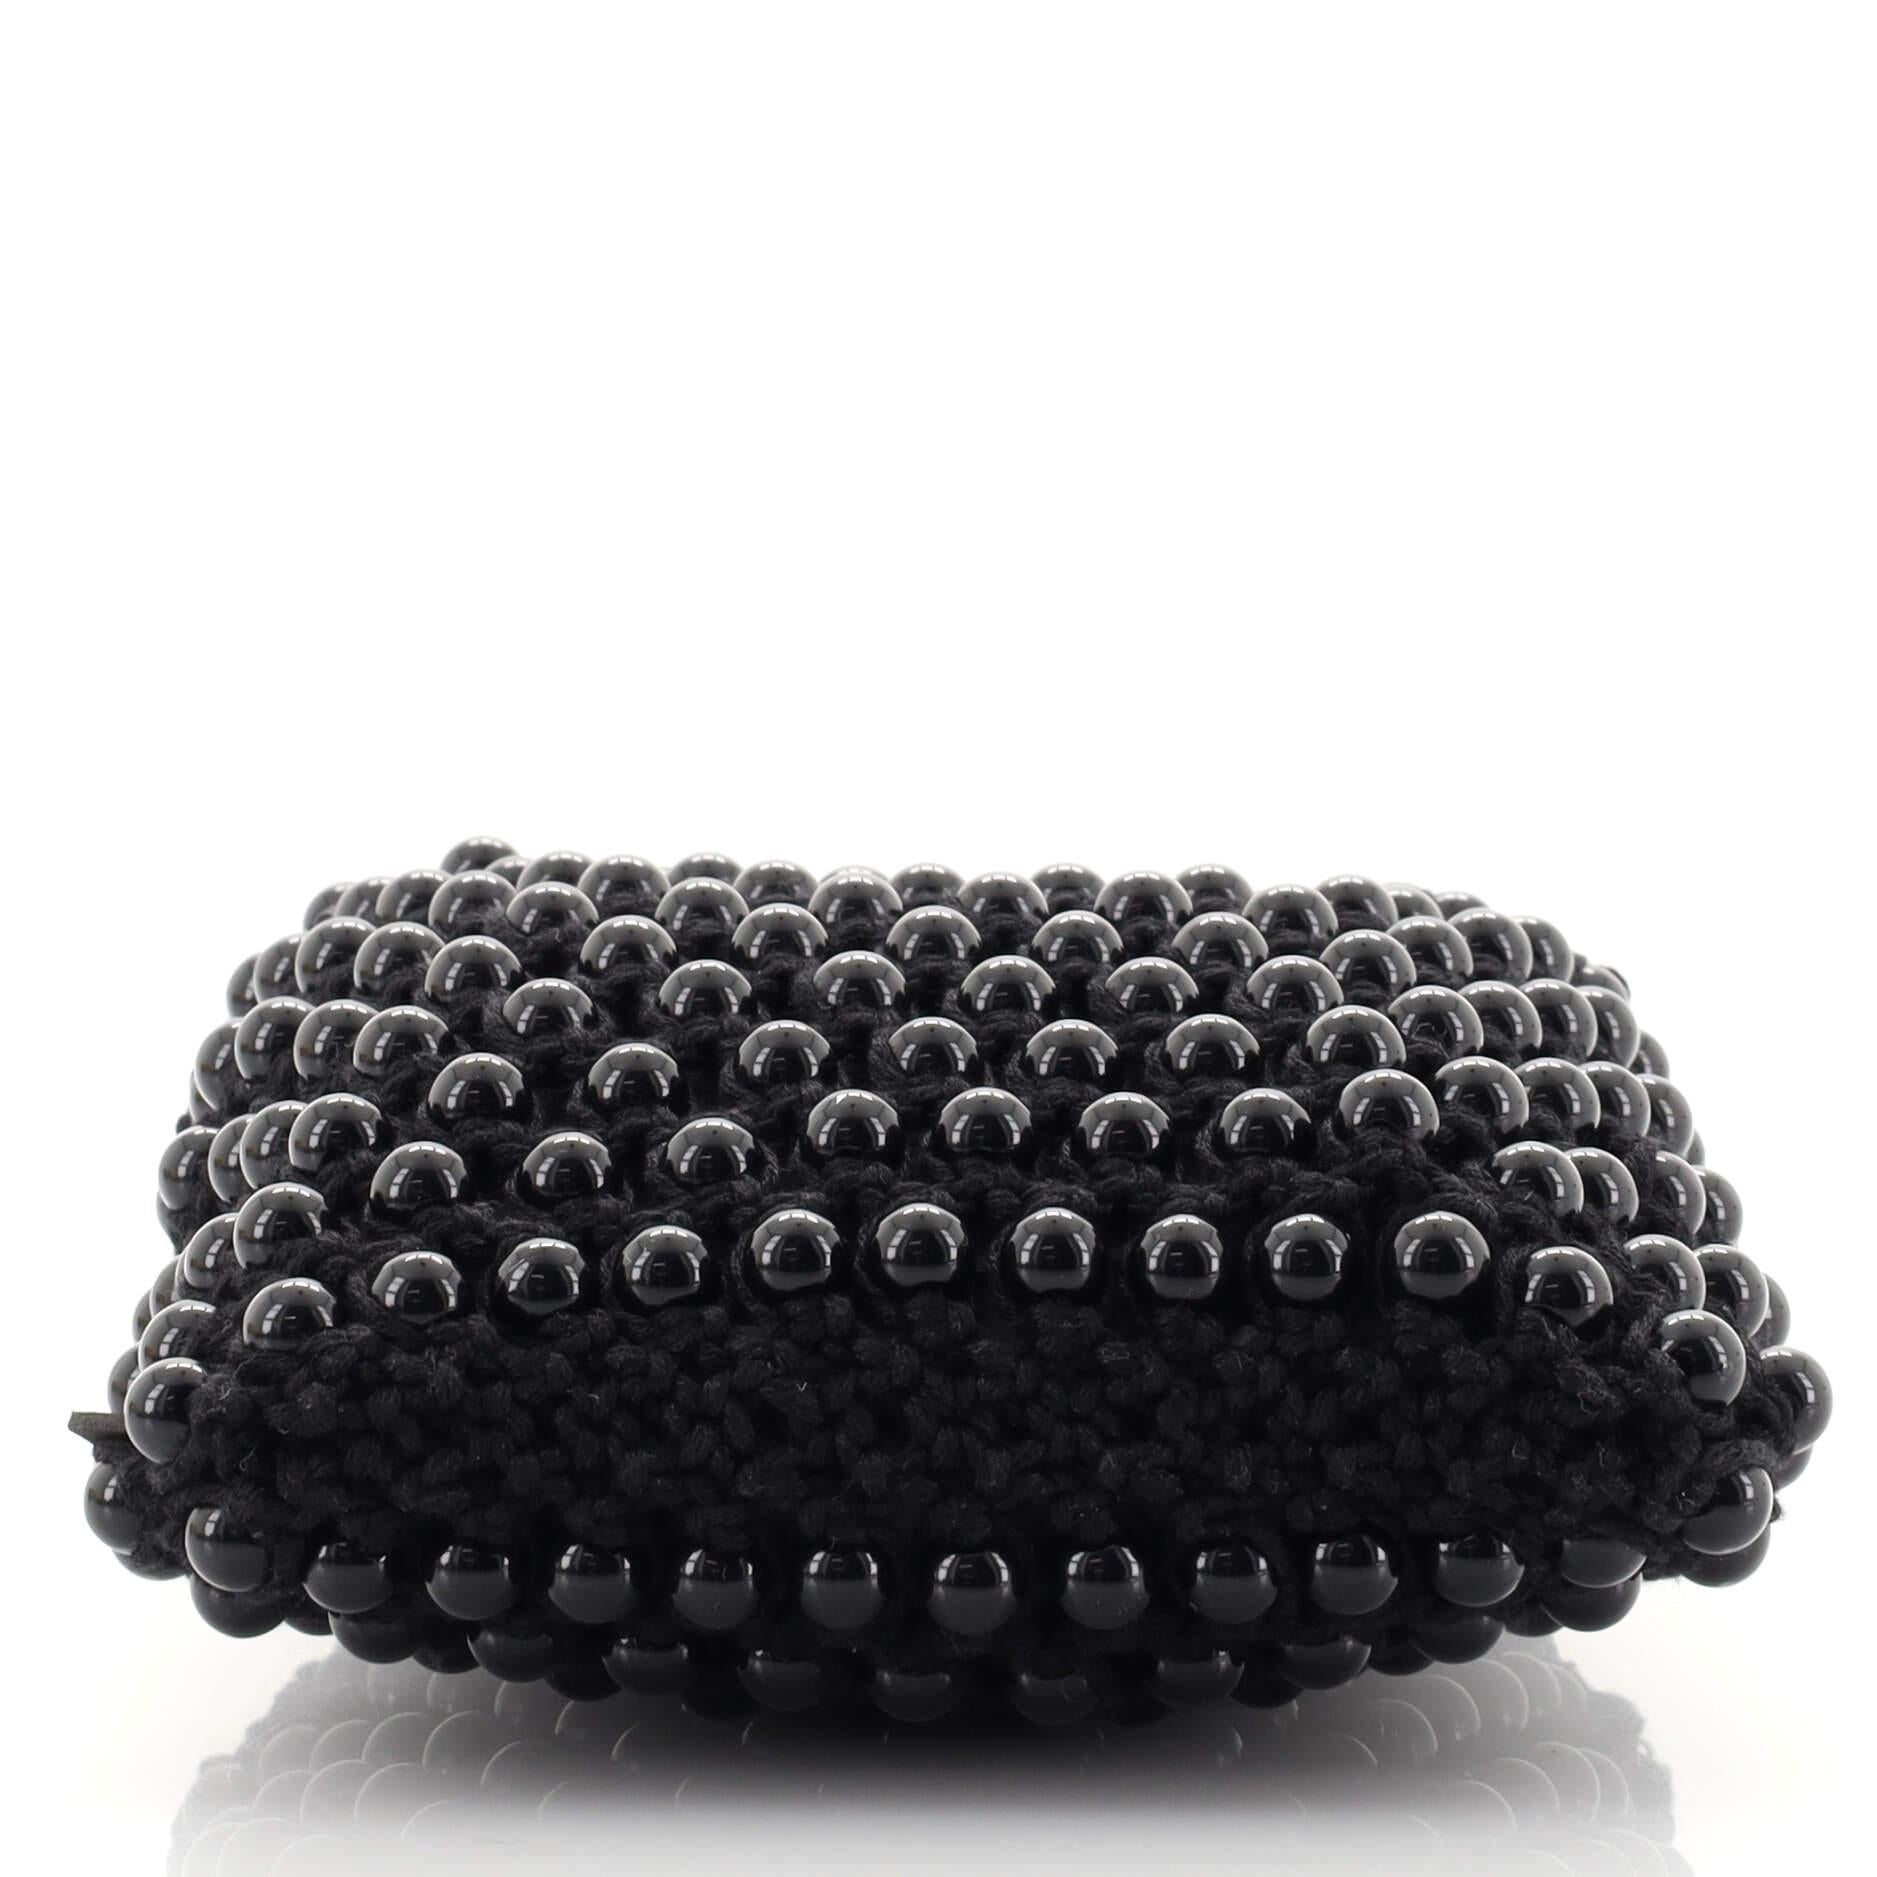 Women's or Men's Fendi Baguette Phone Bag Woven Crochet with Beads Mini